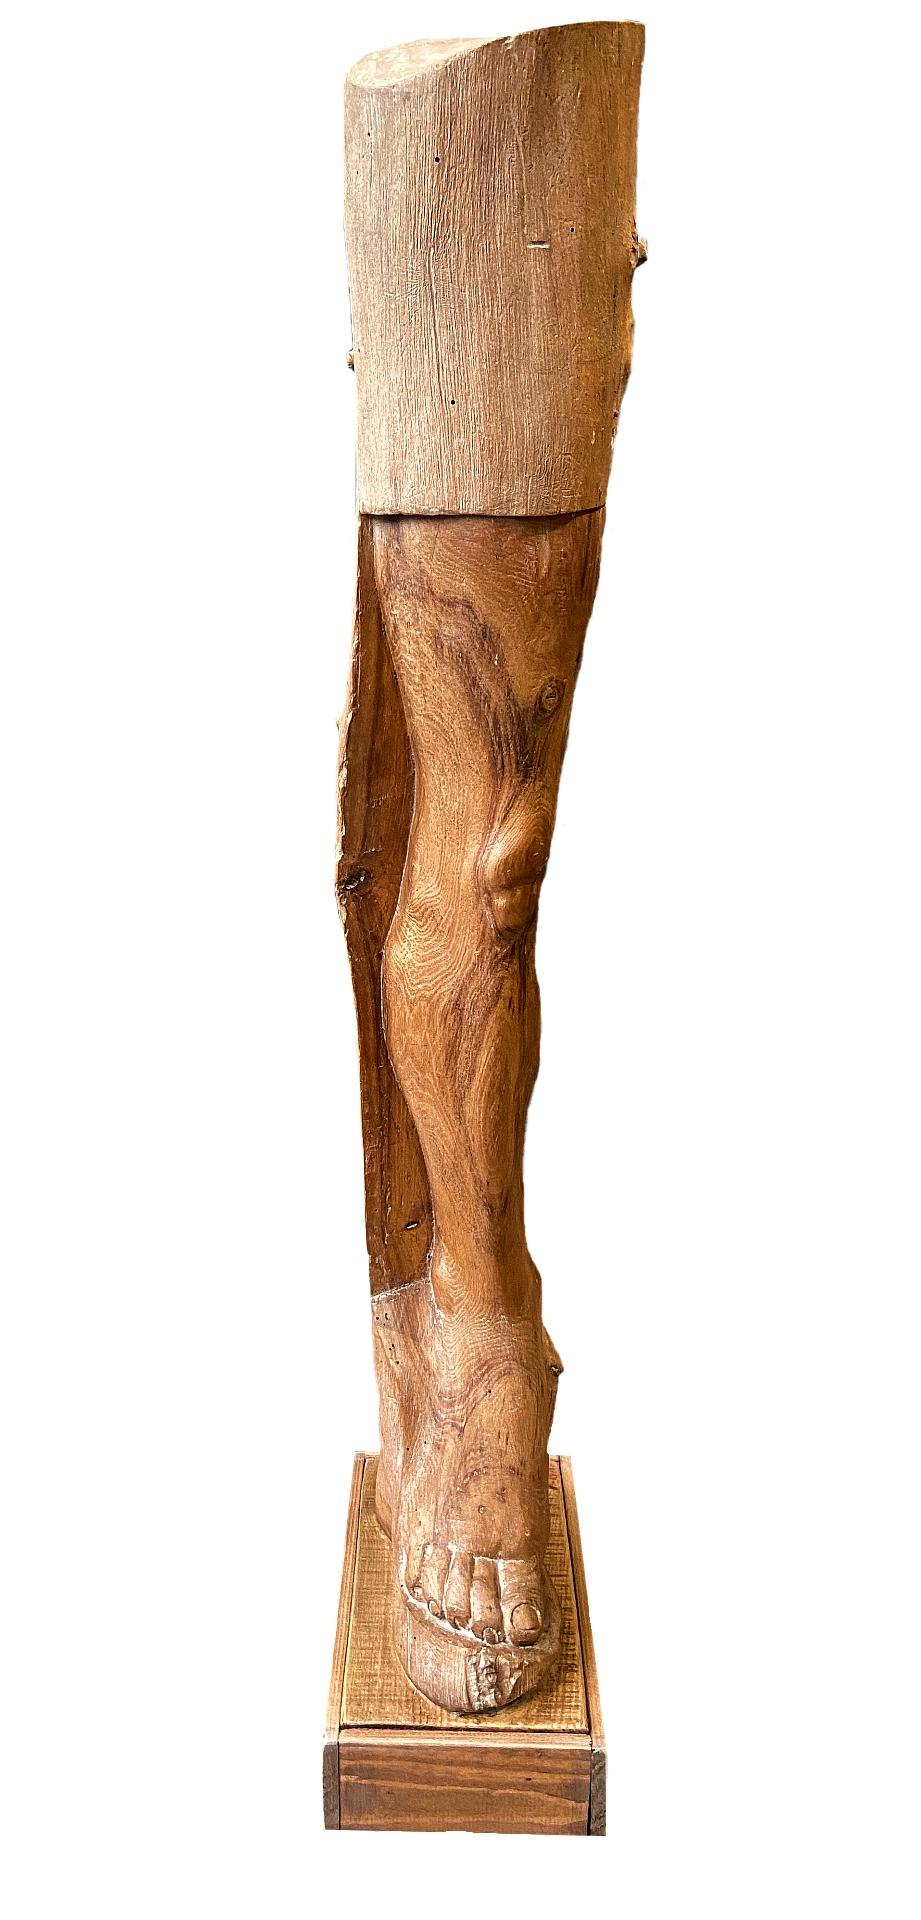 Maquette en bois d'une jambe, sculpture britannique sculptée à la main